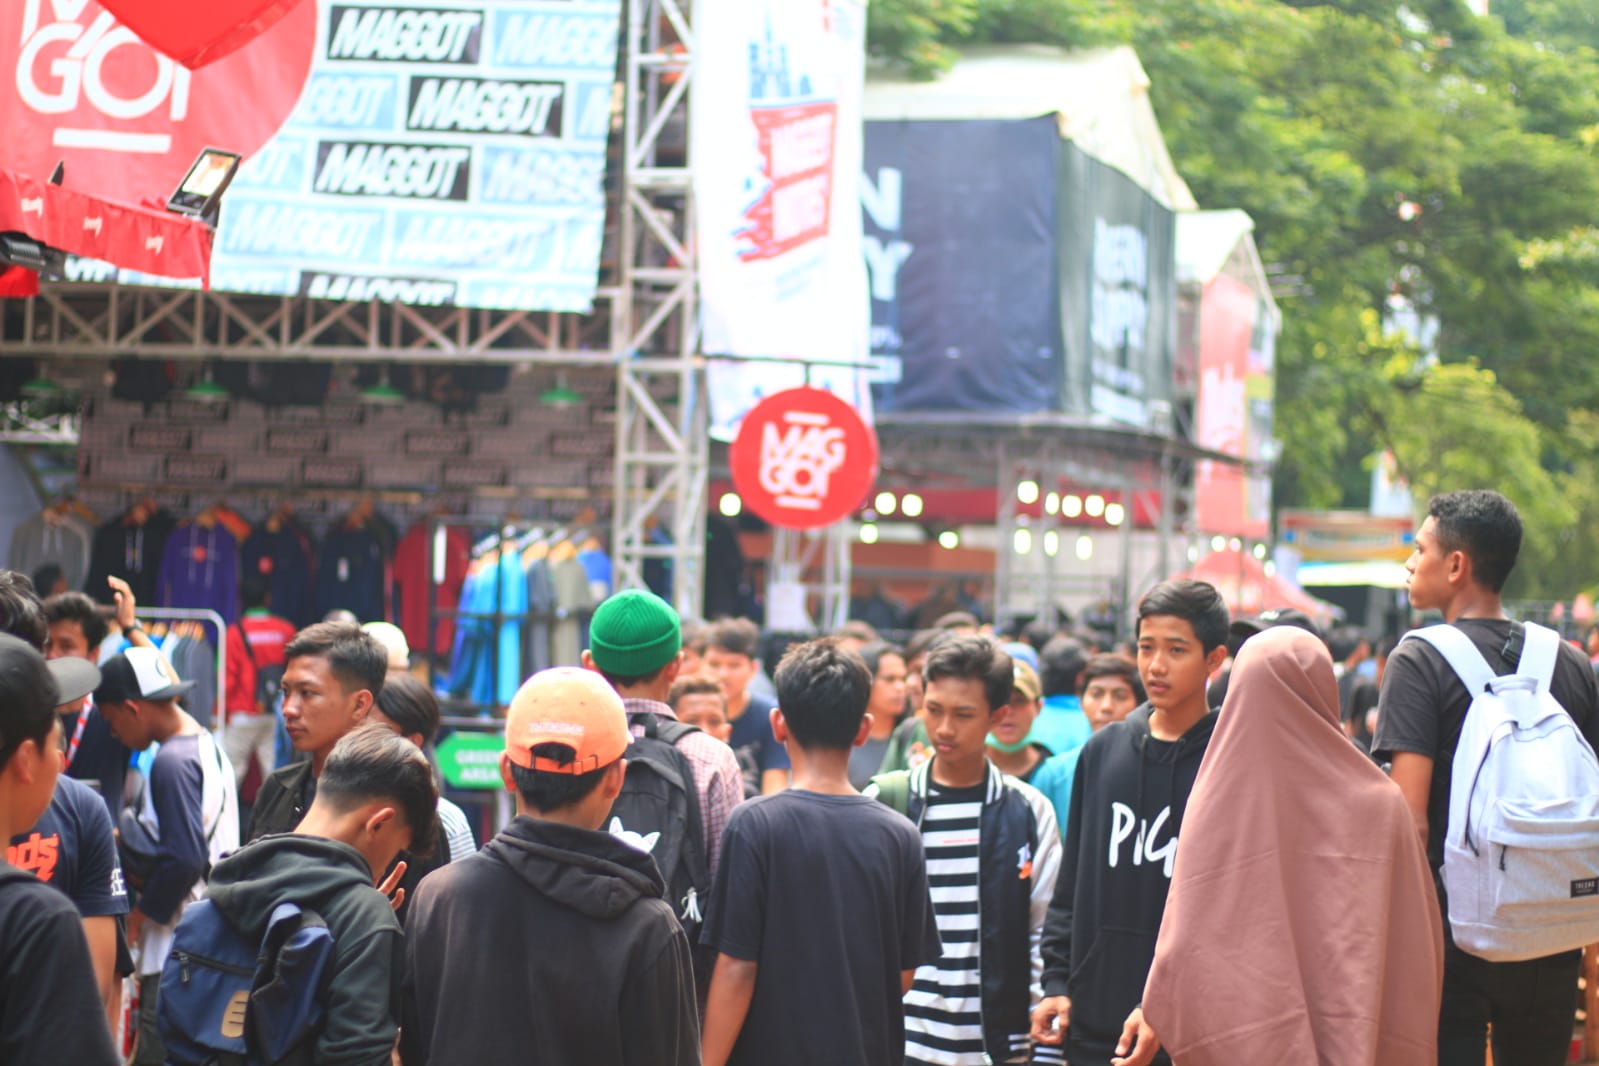 Event tahunan Jakcloth yang di selengarakan di Cikupa, Kabupaten Tangerang.